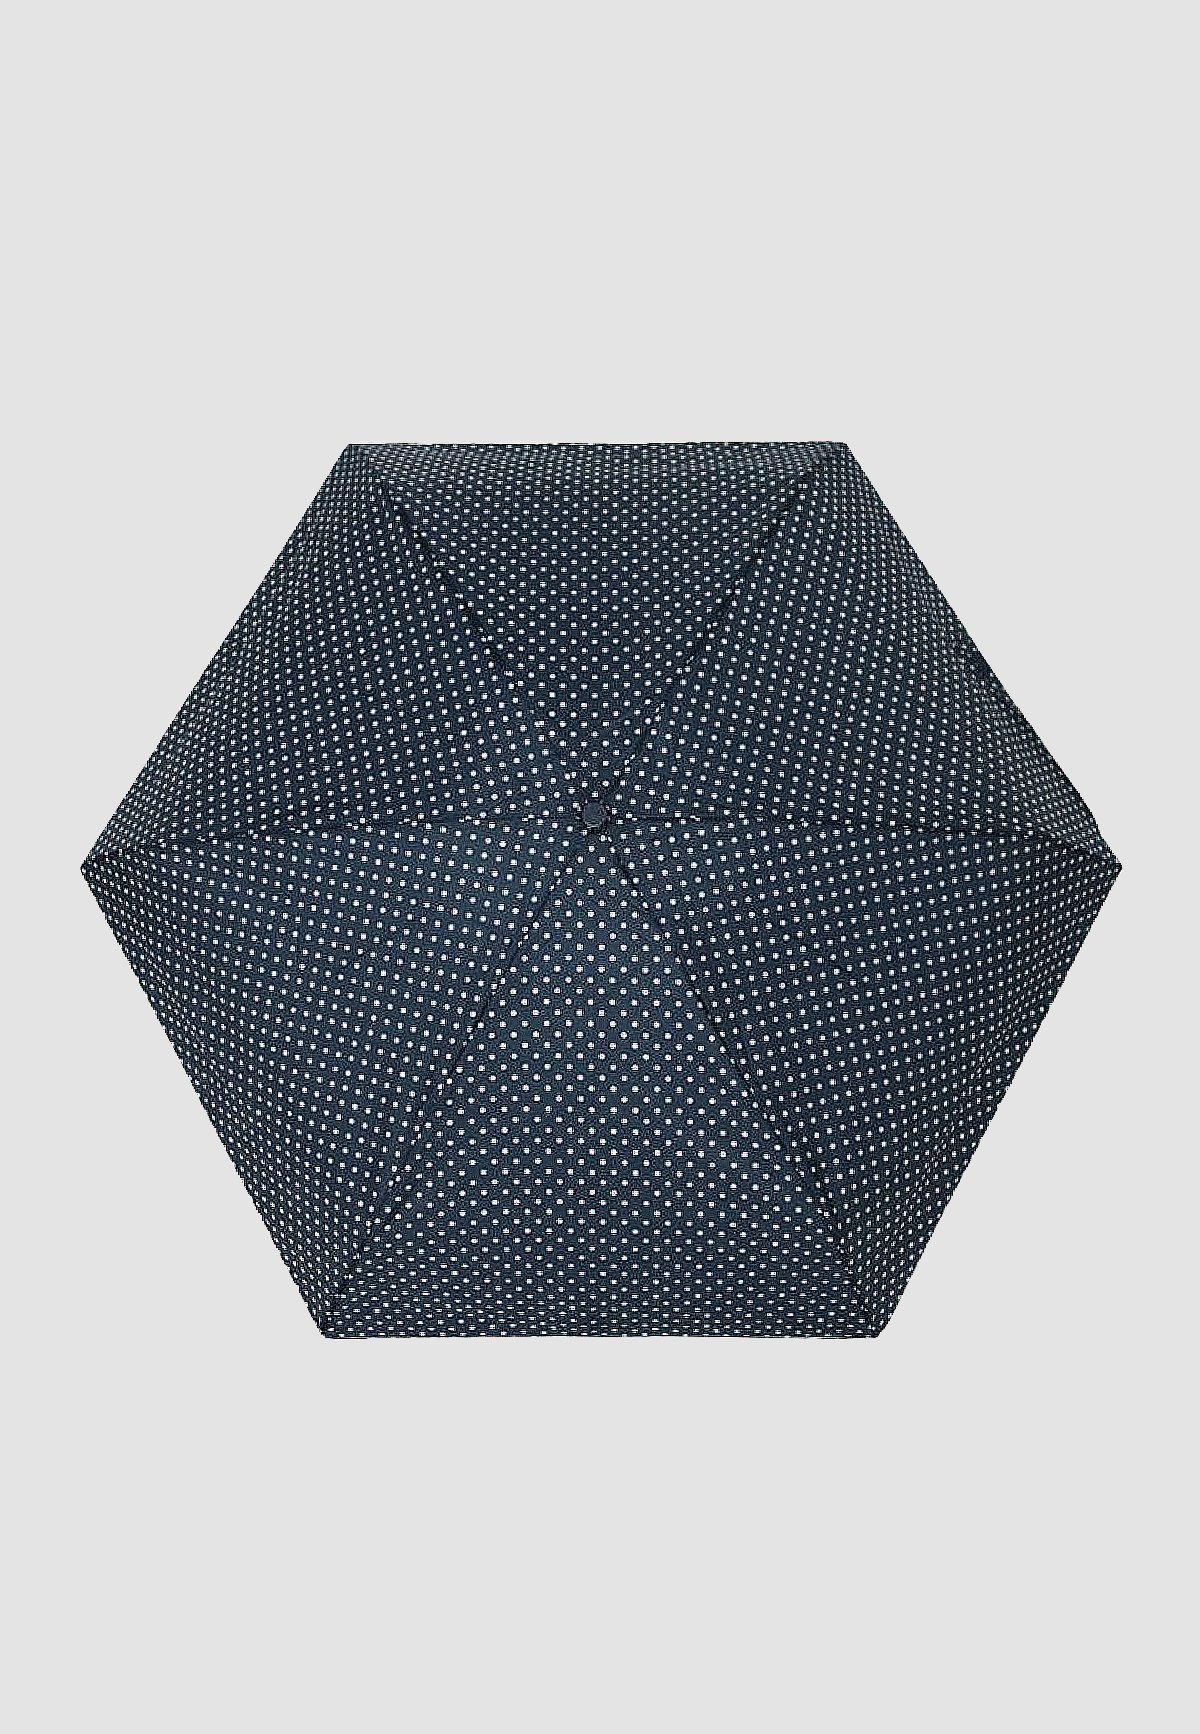 Mini Regenschirm Ausführung Navy 4684 in Taschenregenschirm Gepunktet, Taschen ANELY Kleiner